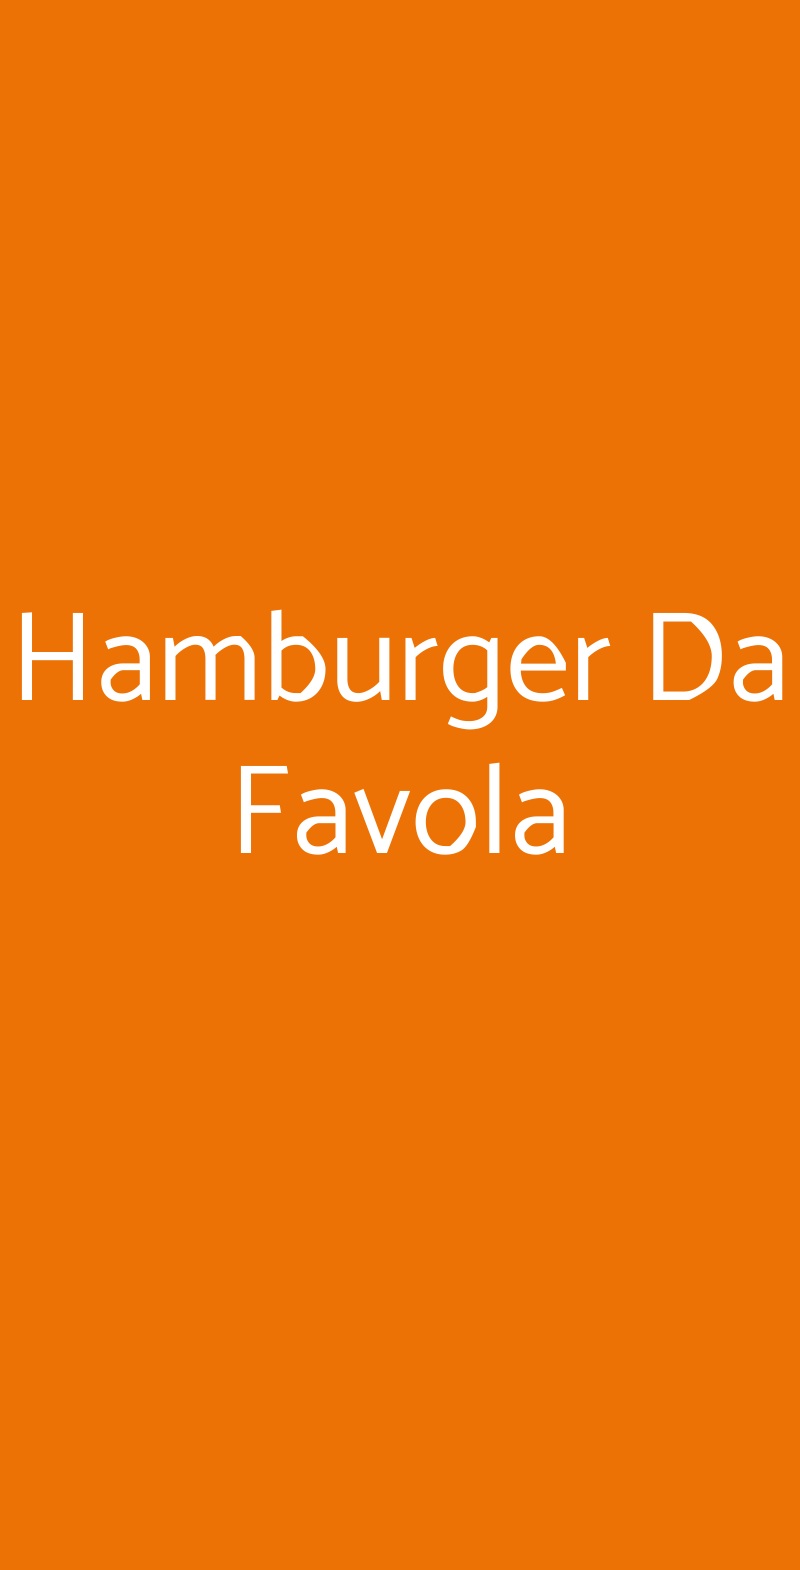 Hamburger Da Favola Torino menù 1 pagina